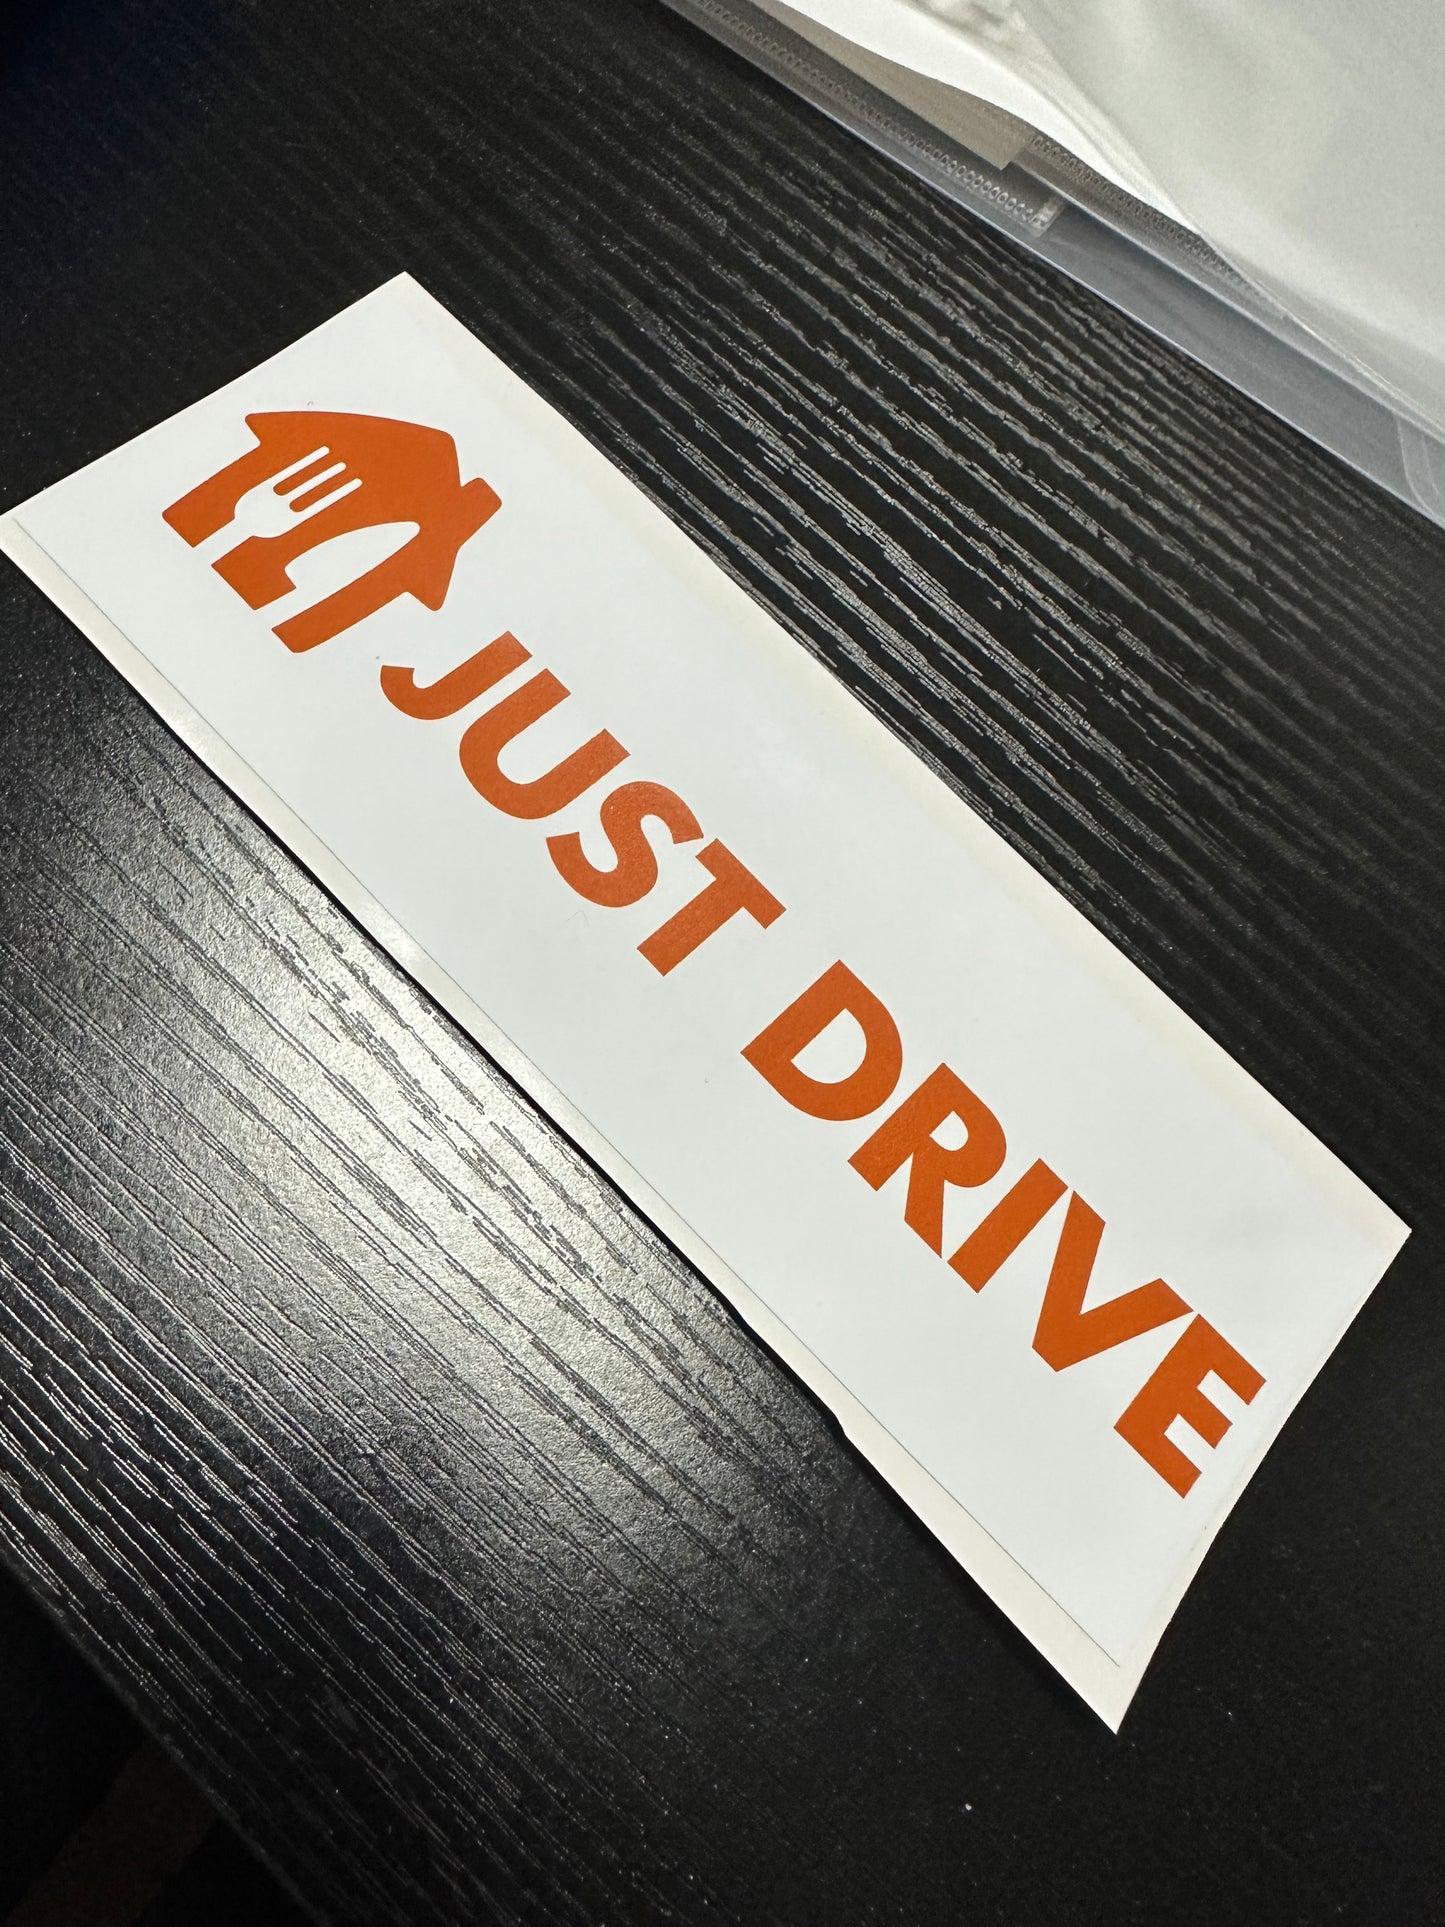 Just Drive Slap Sticker